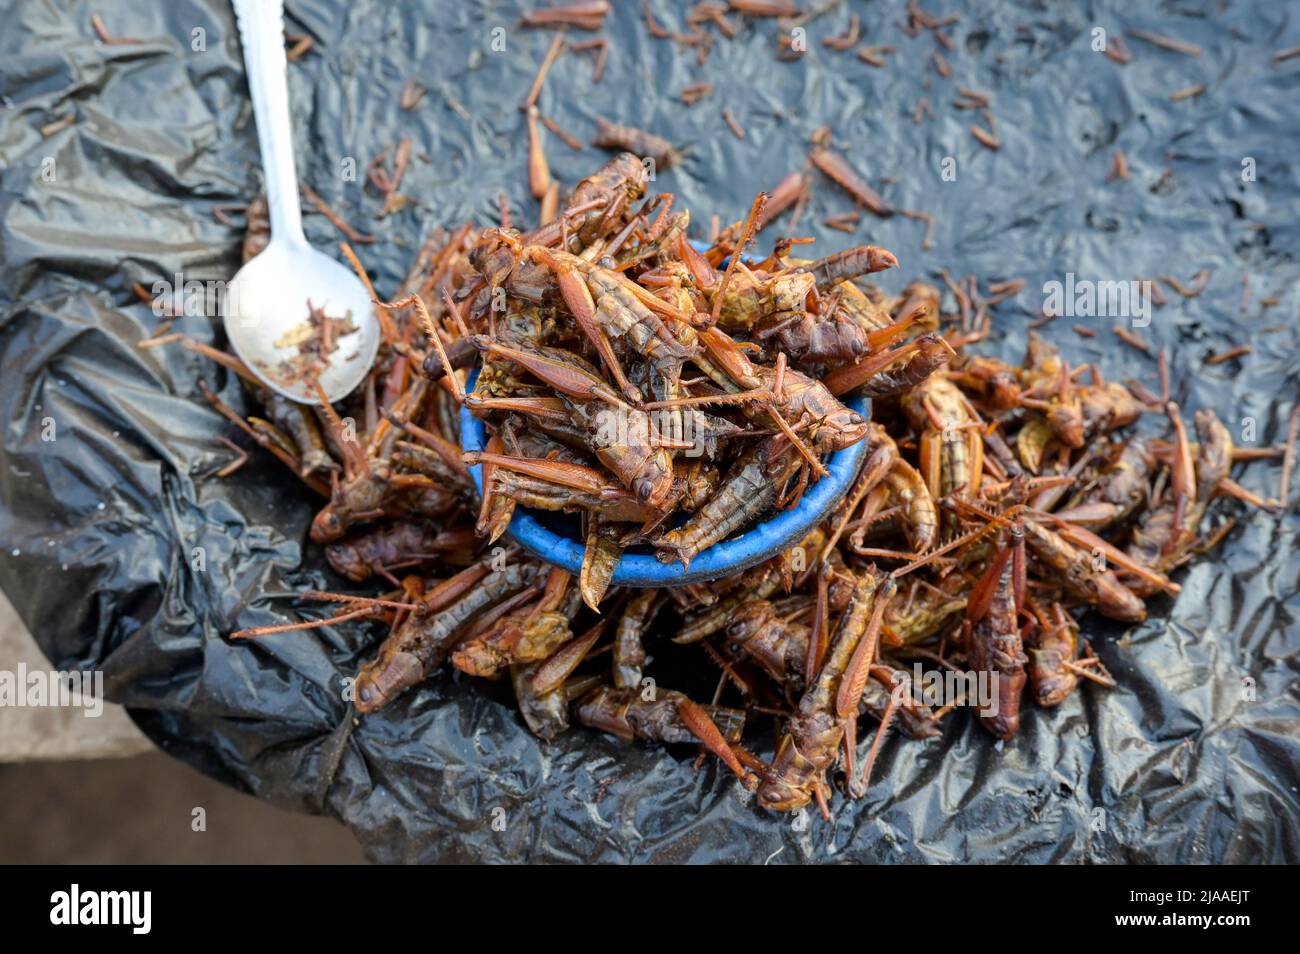 MALAWI, Lilongwe, market, selling of fried grasshoppers a delicacy with high protein content / Markt, Verkauf von frittierten Heuschrecken als Delikatesse, die sehr eiweißhaltig sind Stock Photo